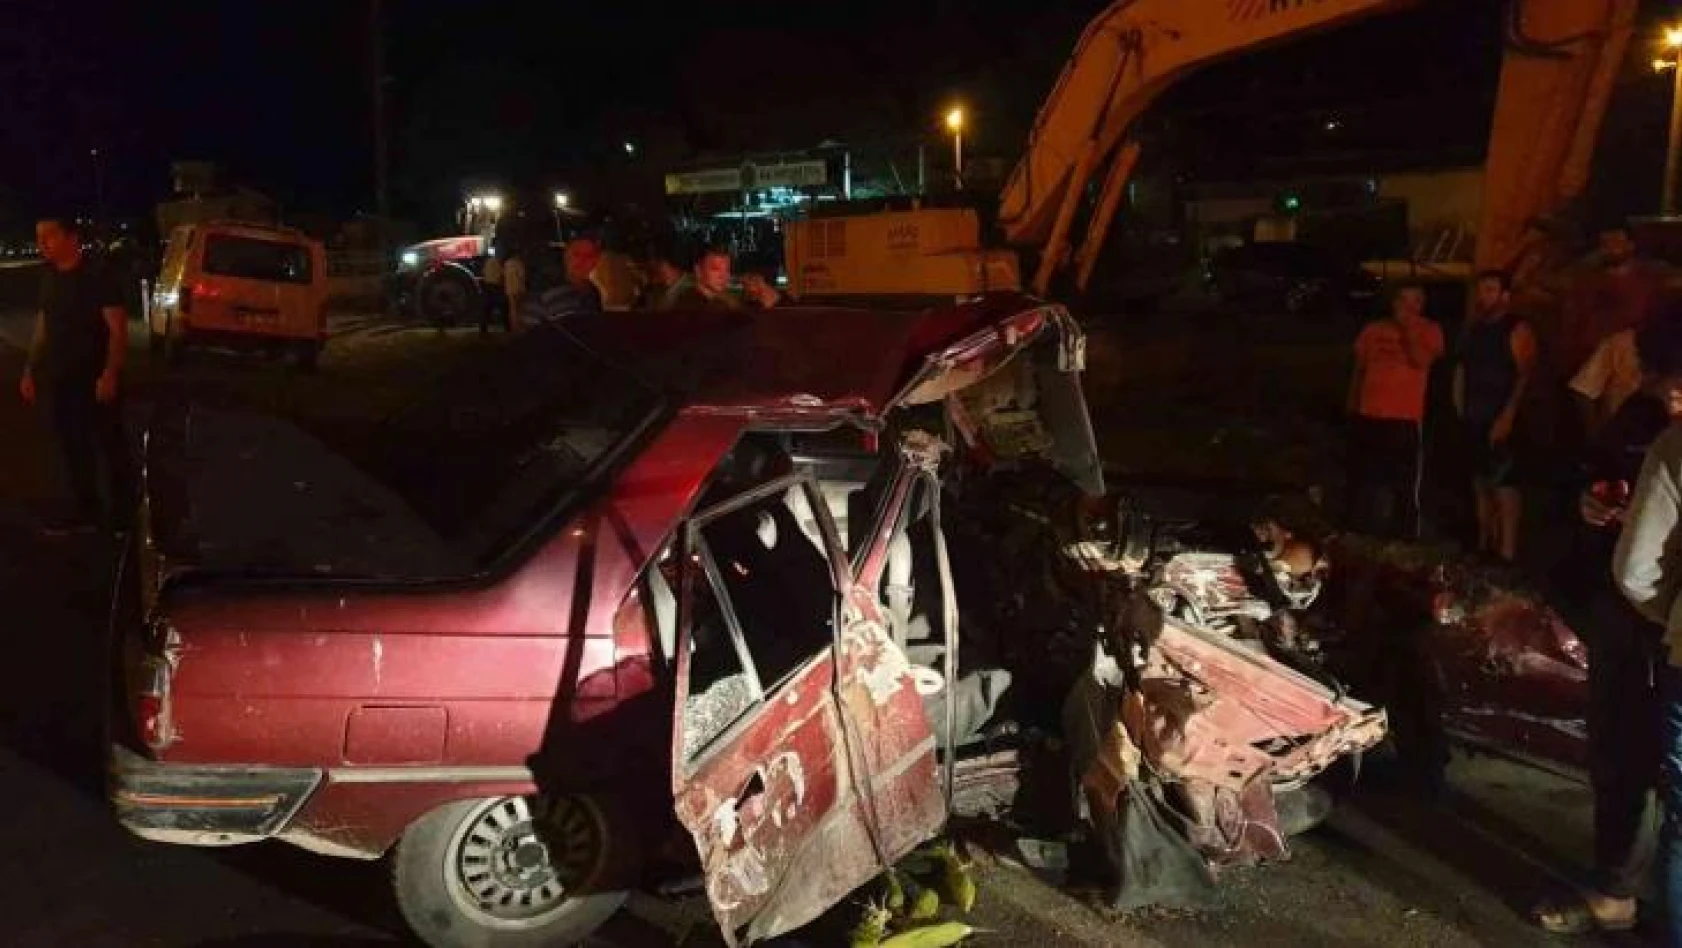 Samsun'da fındık işçilerini taşıyan minibüs ile otomobil çarpıştı: 2 ölü, 4 yaralı